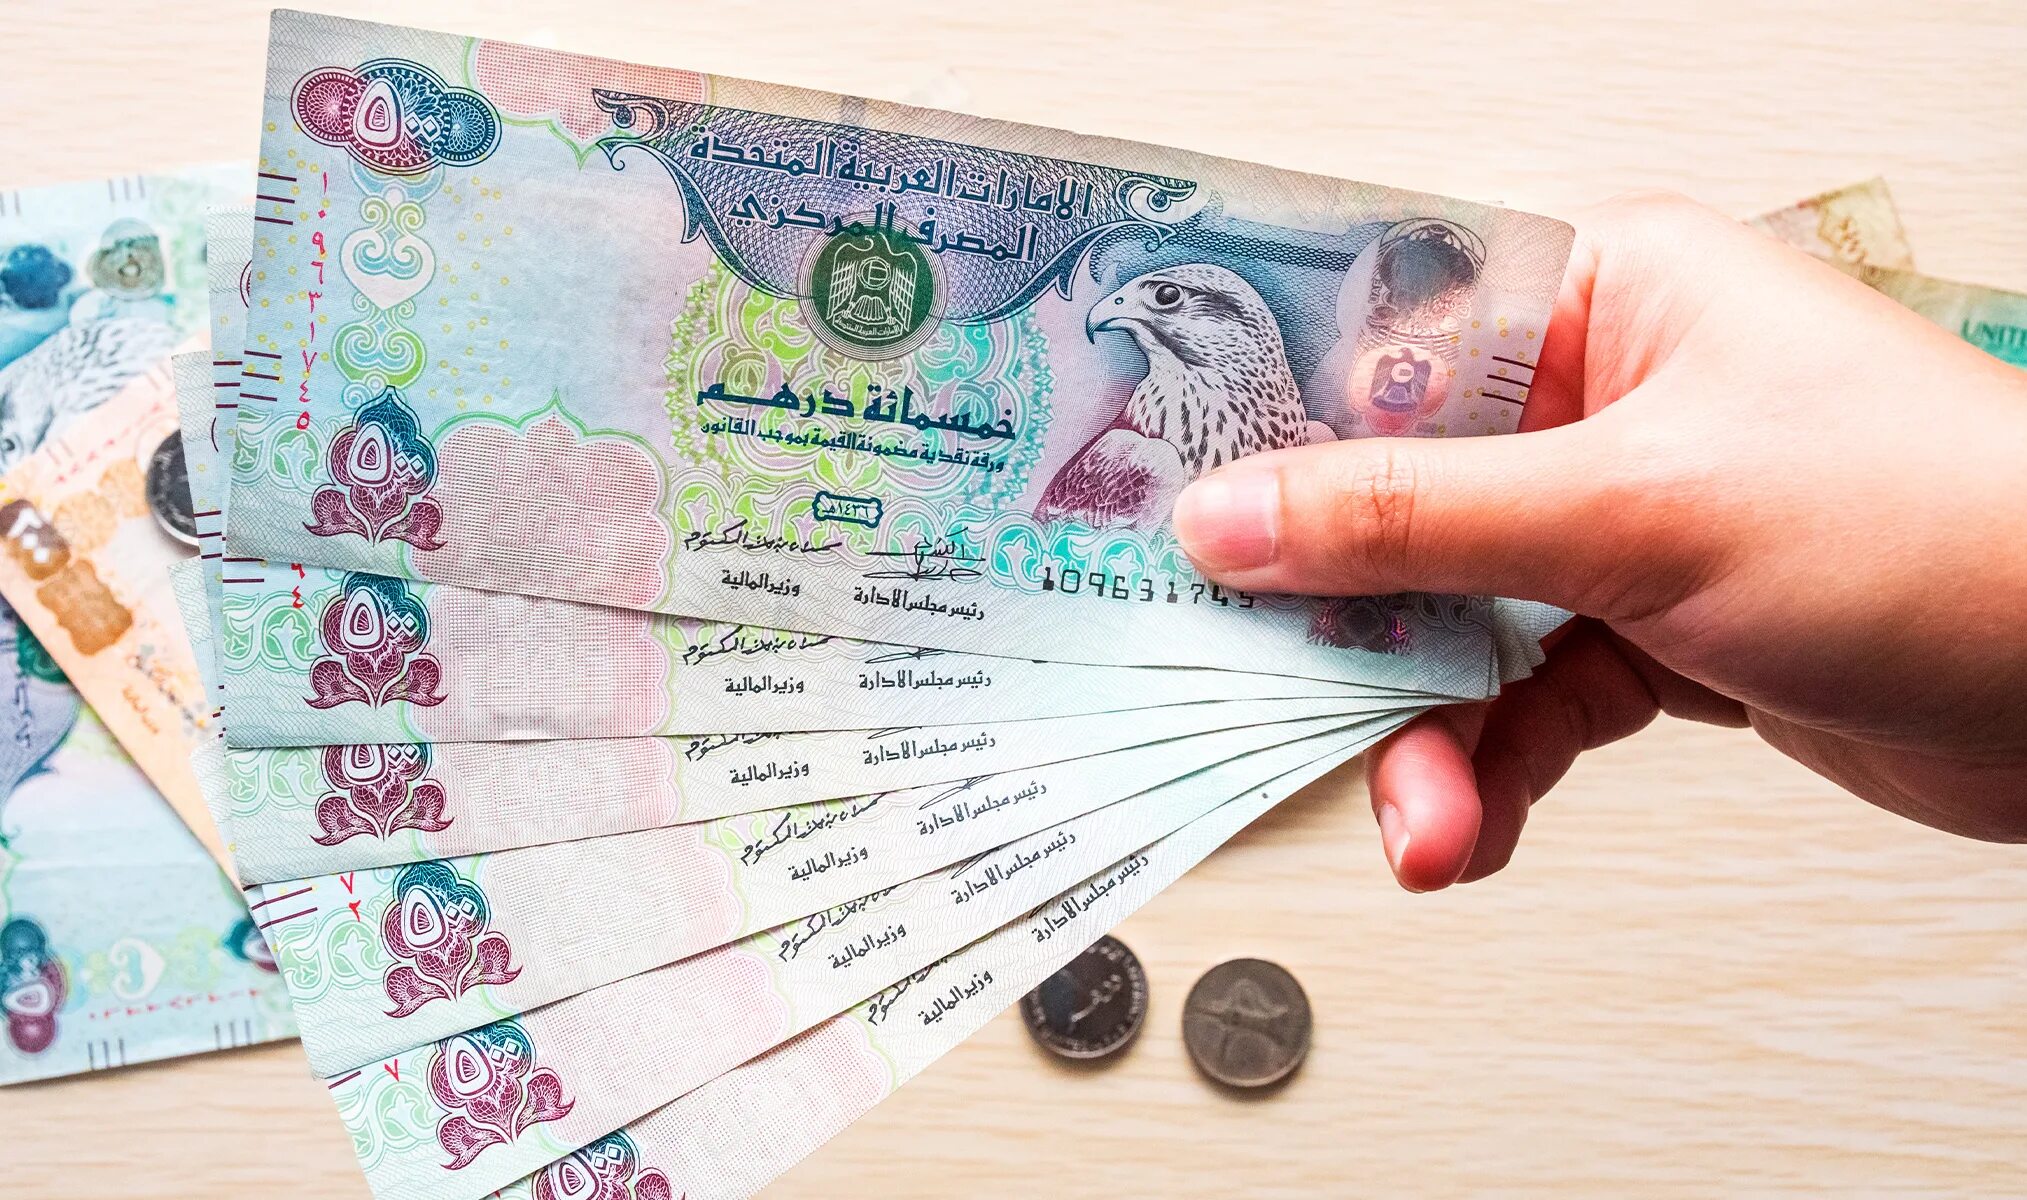 1 доллар в дубае. Валюта ОАЭ. Деньги в Дубае. Дирхамы в доллары. Деньги Дубая фото бумажные.